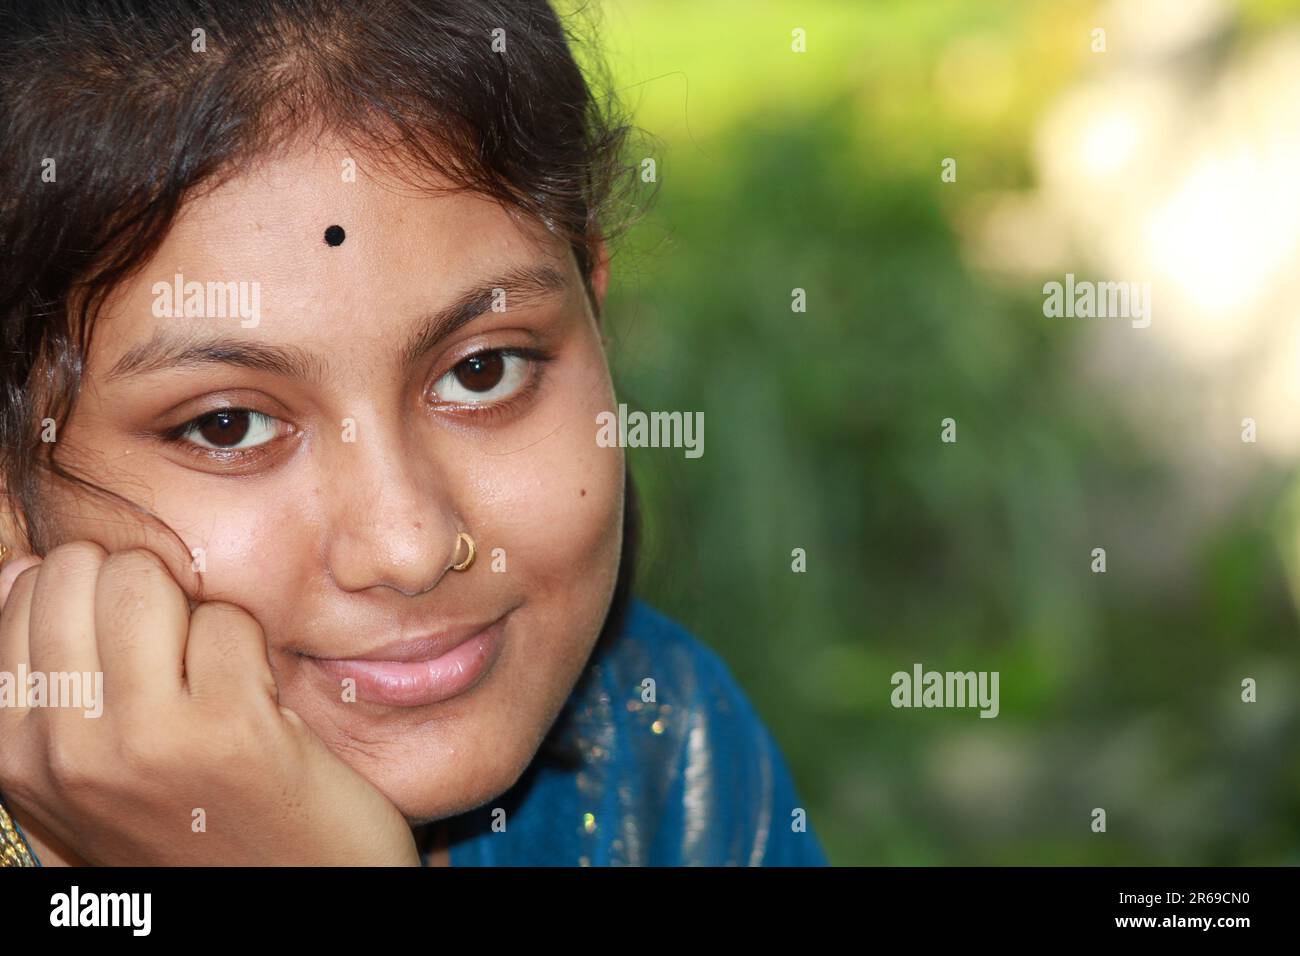 Une adolescente indienne est assise avec sa main sur sa joue Banque D'Images